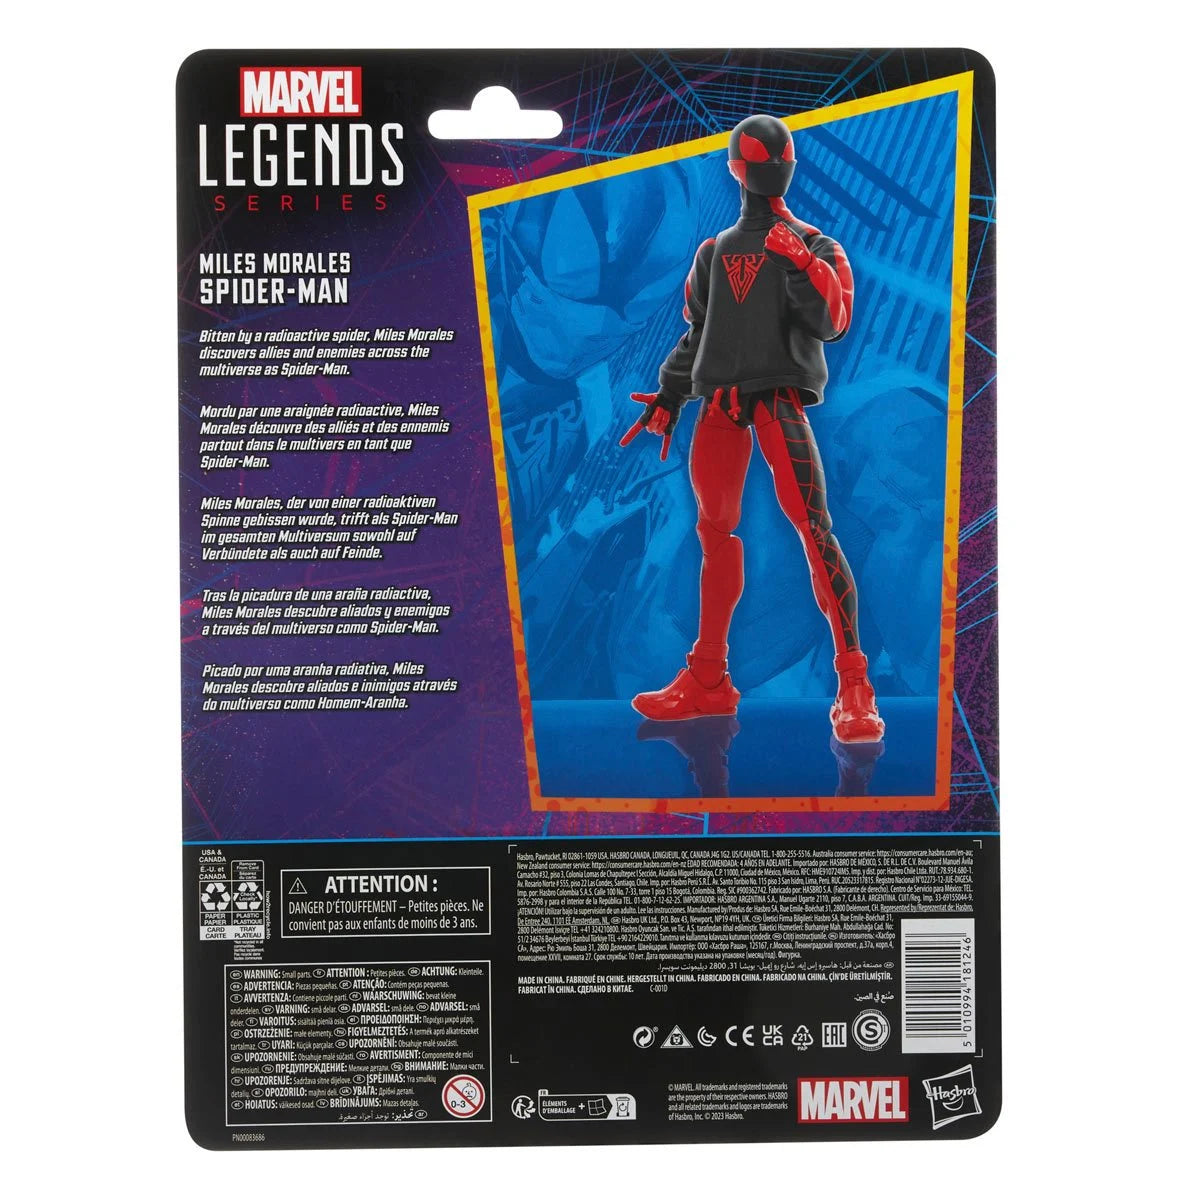 Marvel Legends Spider-Man - Miles Morales Spider-Man Action Figure Toy